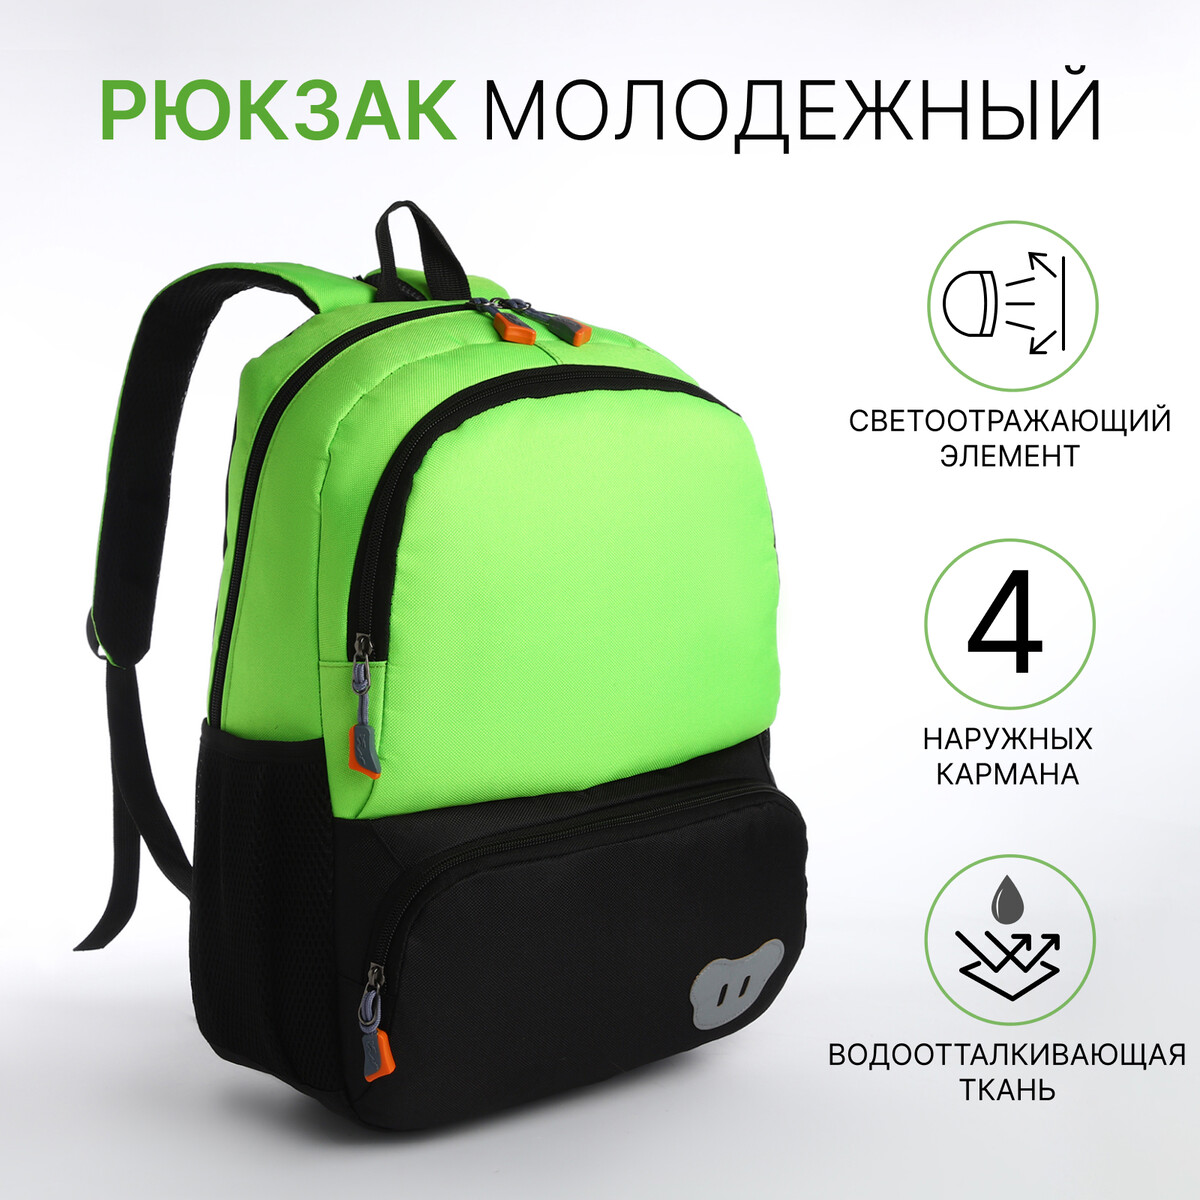 Рюкзак школьный, 2 отдела молнии, 3 кармана, цвет черный/зеленый рюкзак школьный из текстиля на молнии 3 кармана пенал зеленый